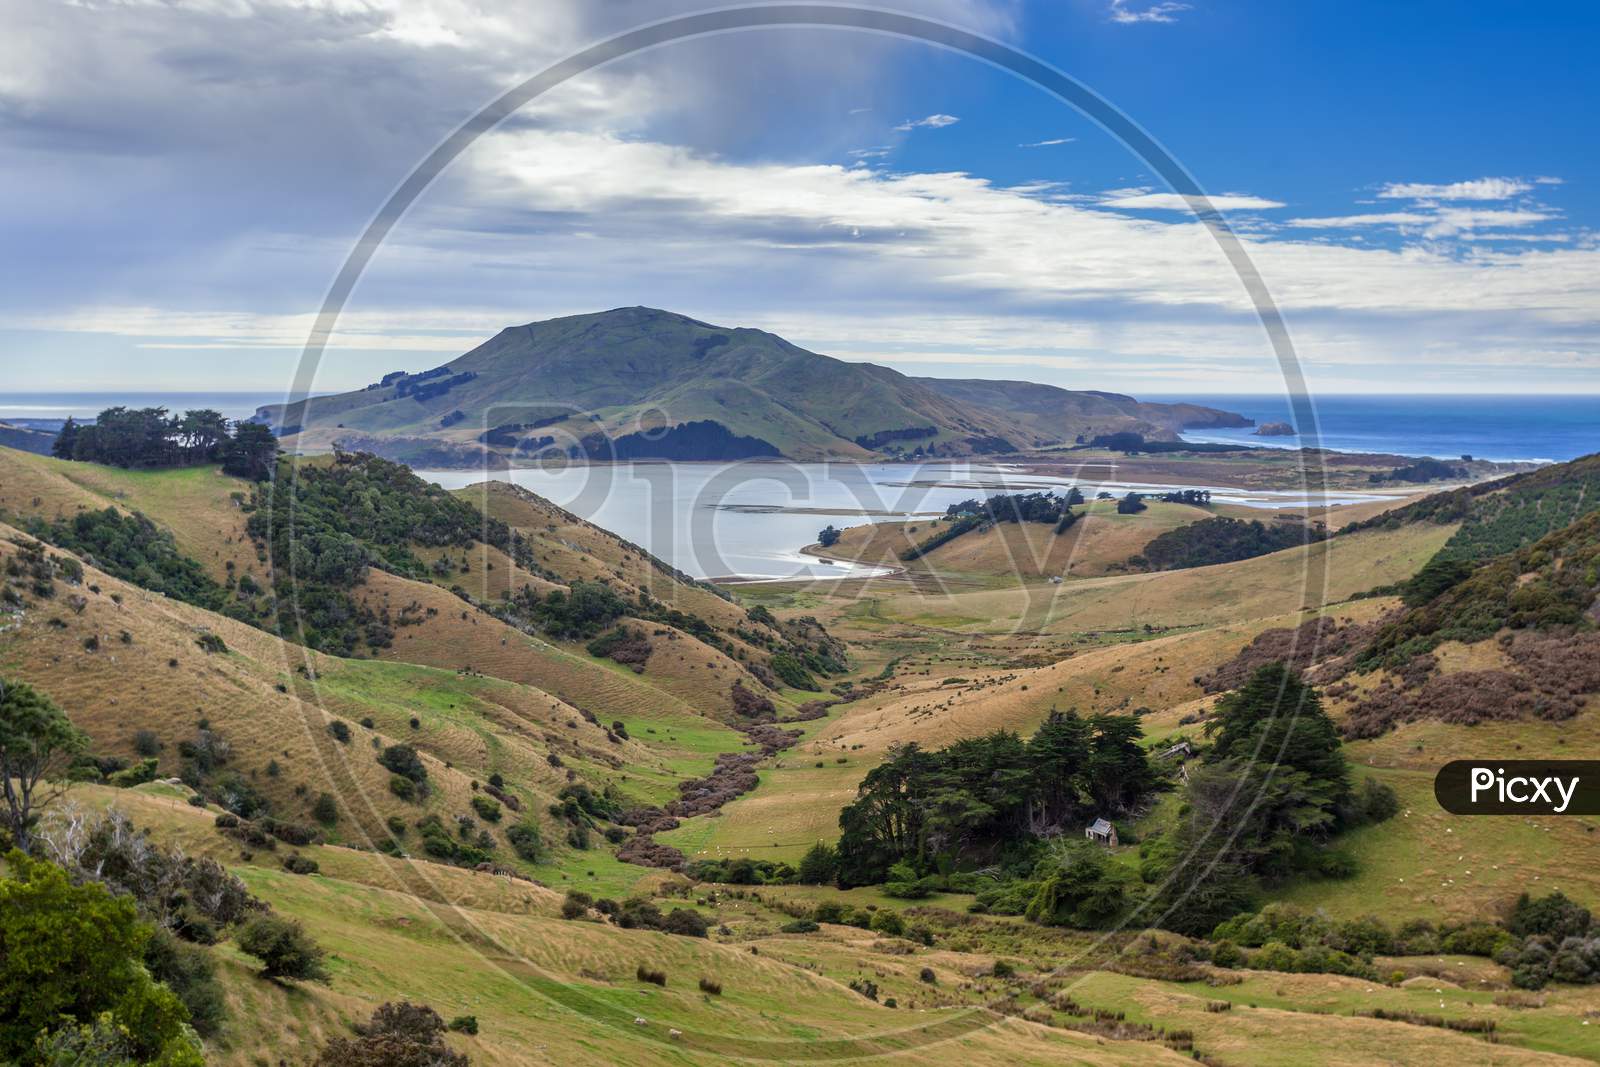 The Otago Peninsula New Zealand